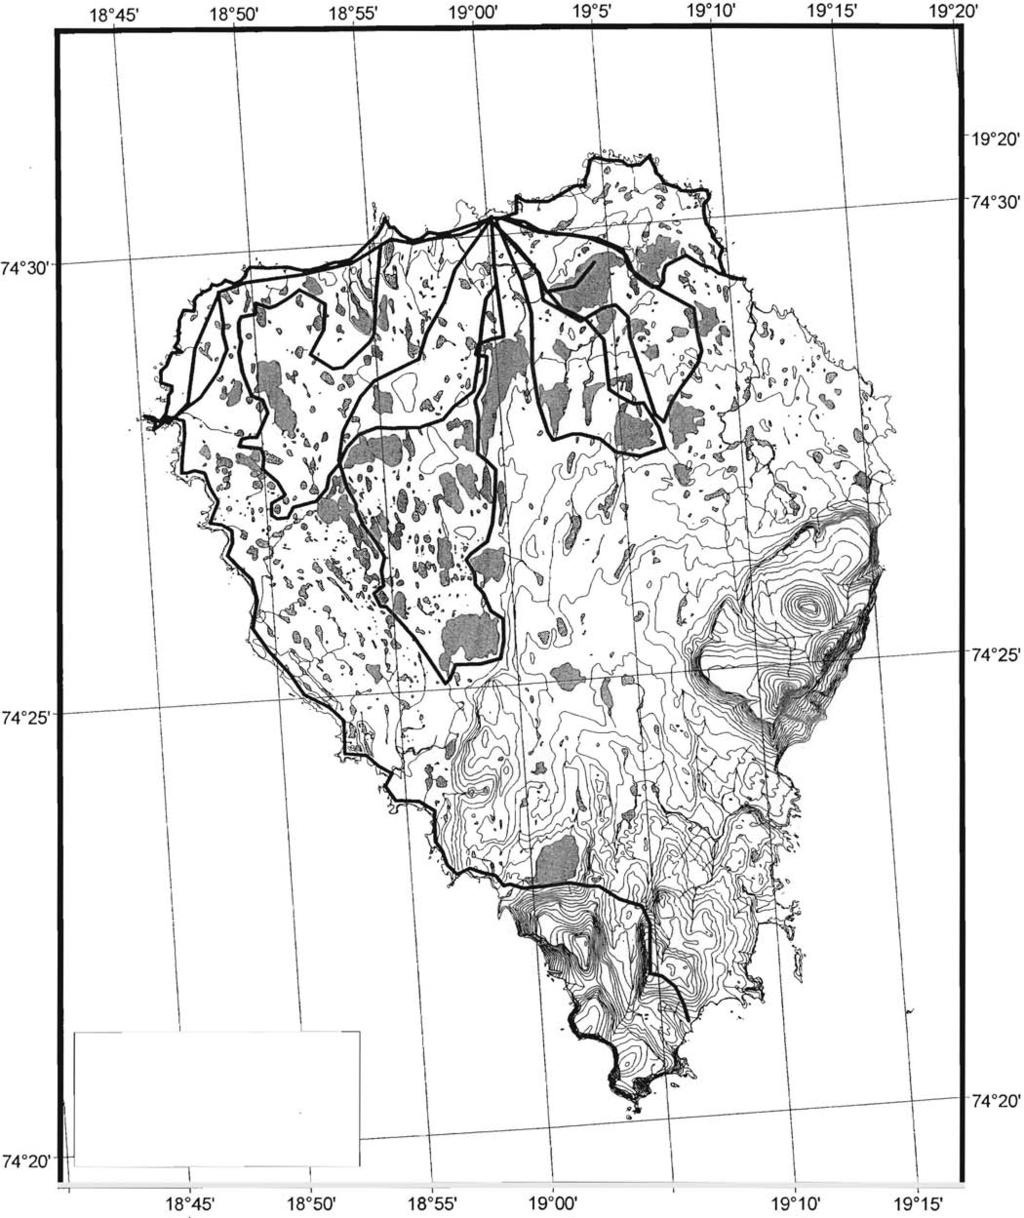 18 40' IV Ruter dekt til fots 74 20' L_--- ----t---r 19 5' Figur 1. Kart over Bjørnøya med angivelse av dekningsgrad for undersøkelsen.